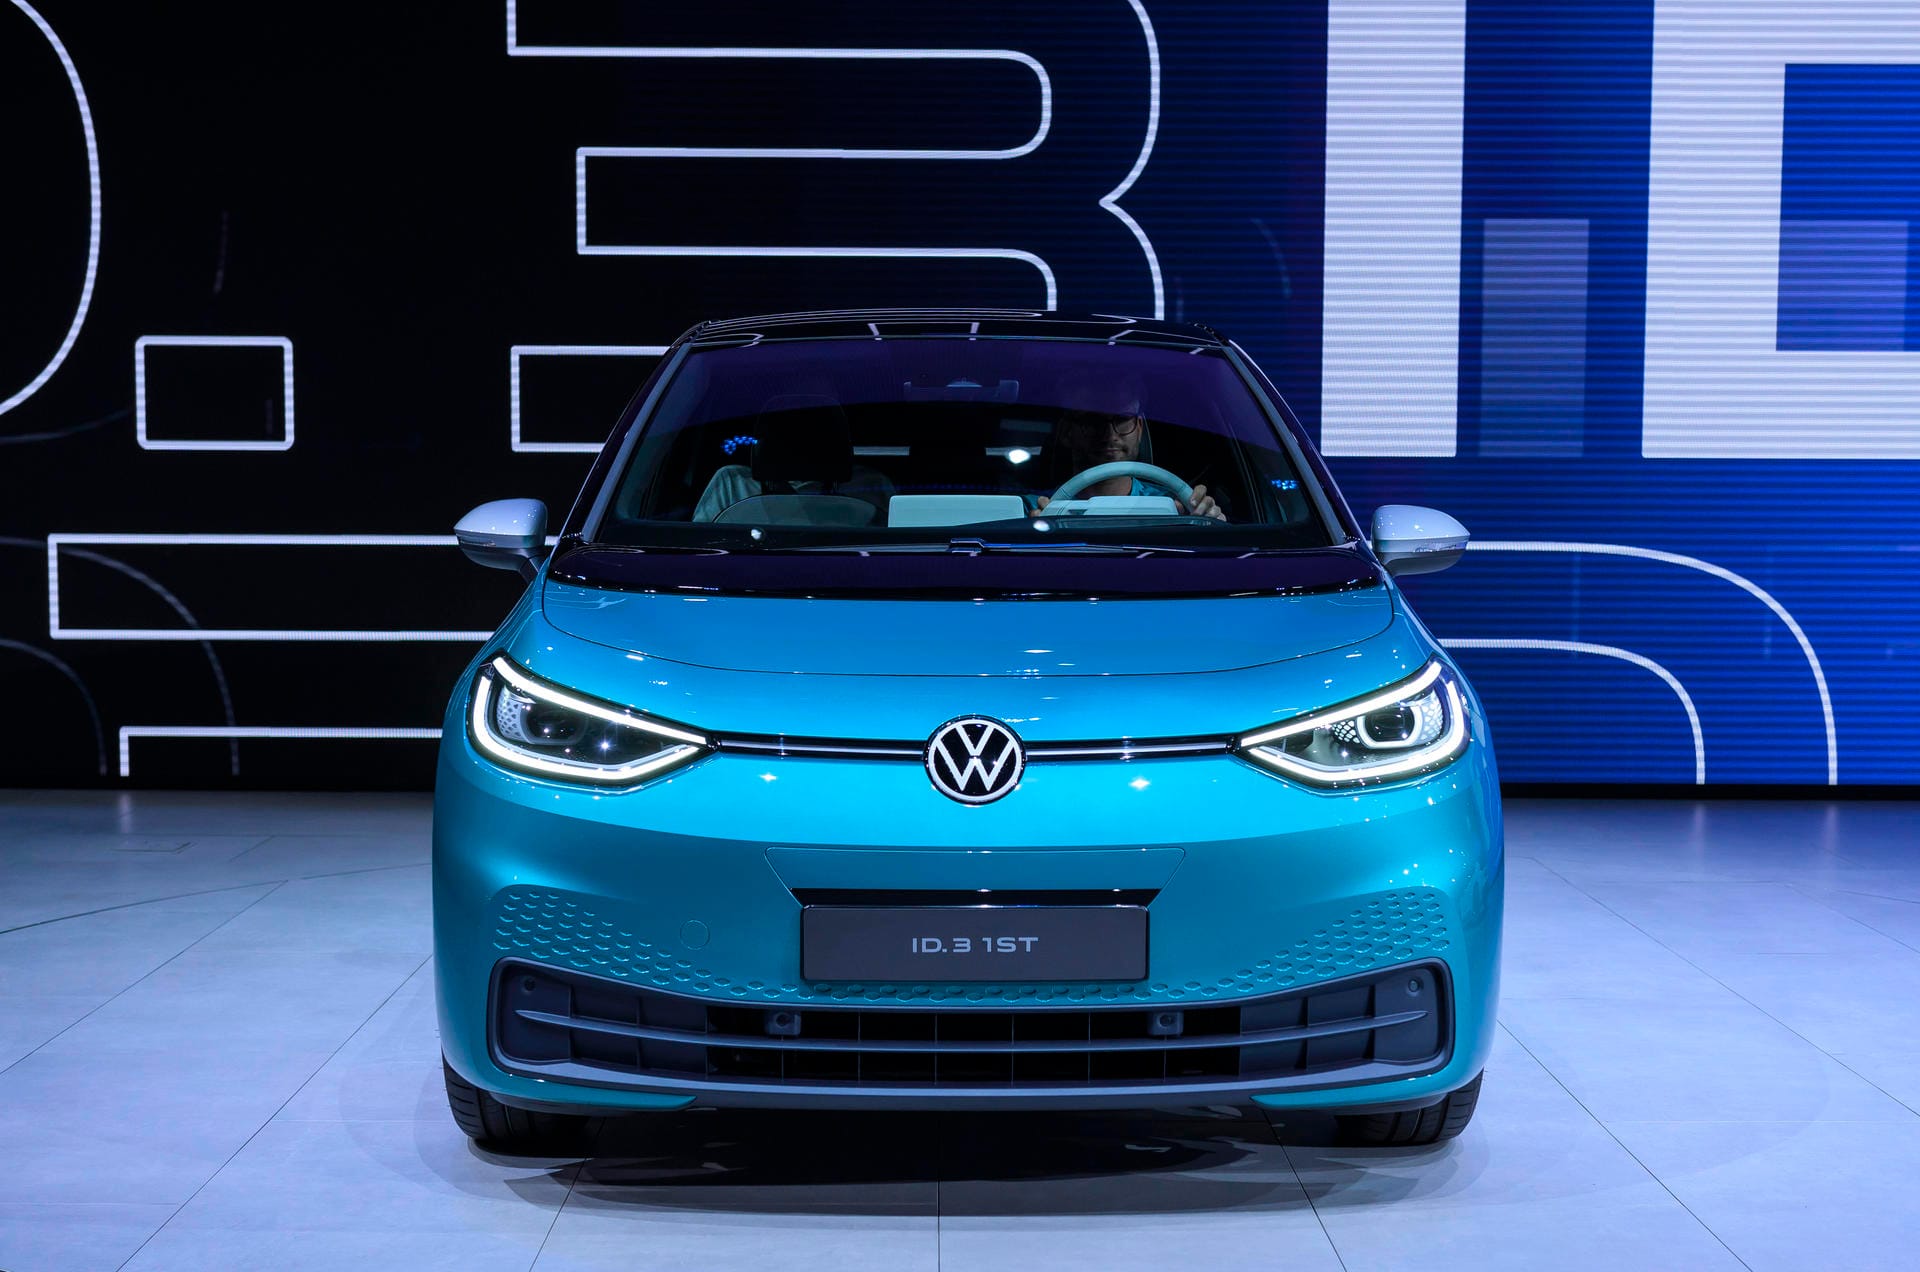 Der neue Elektro-Mittelklassewagen ID.3 soll die E-Mobilität im Kerngeschäft von Volkswagen verankern und Kunden im Massenpublikum erschließen.